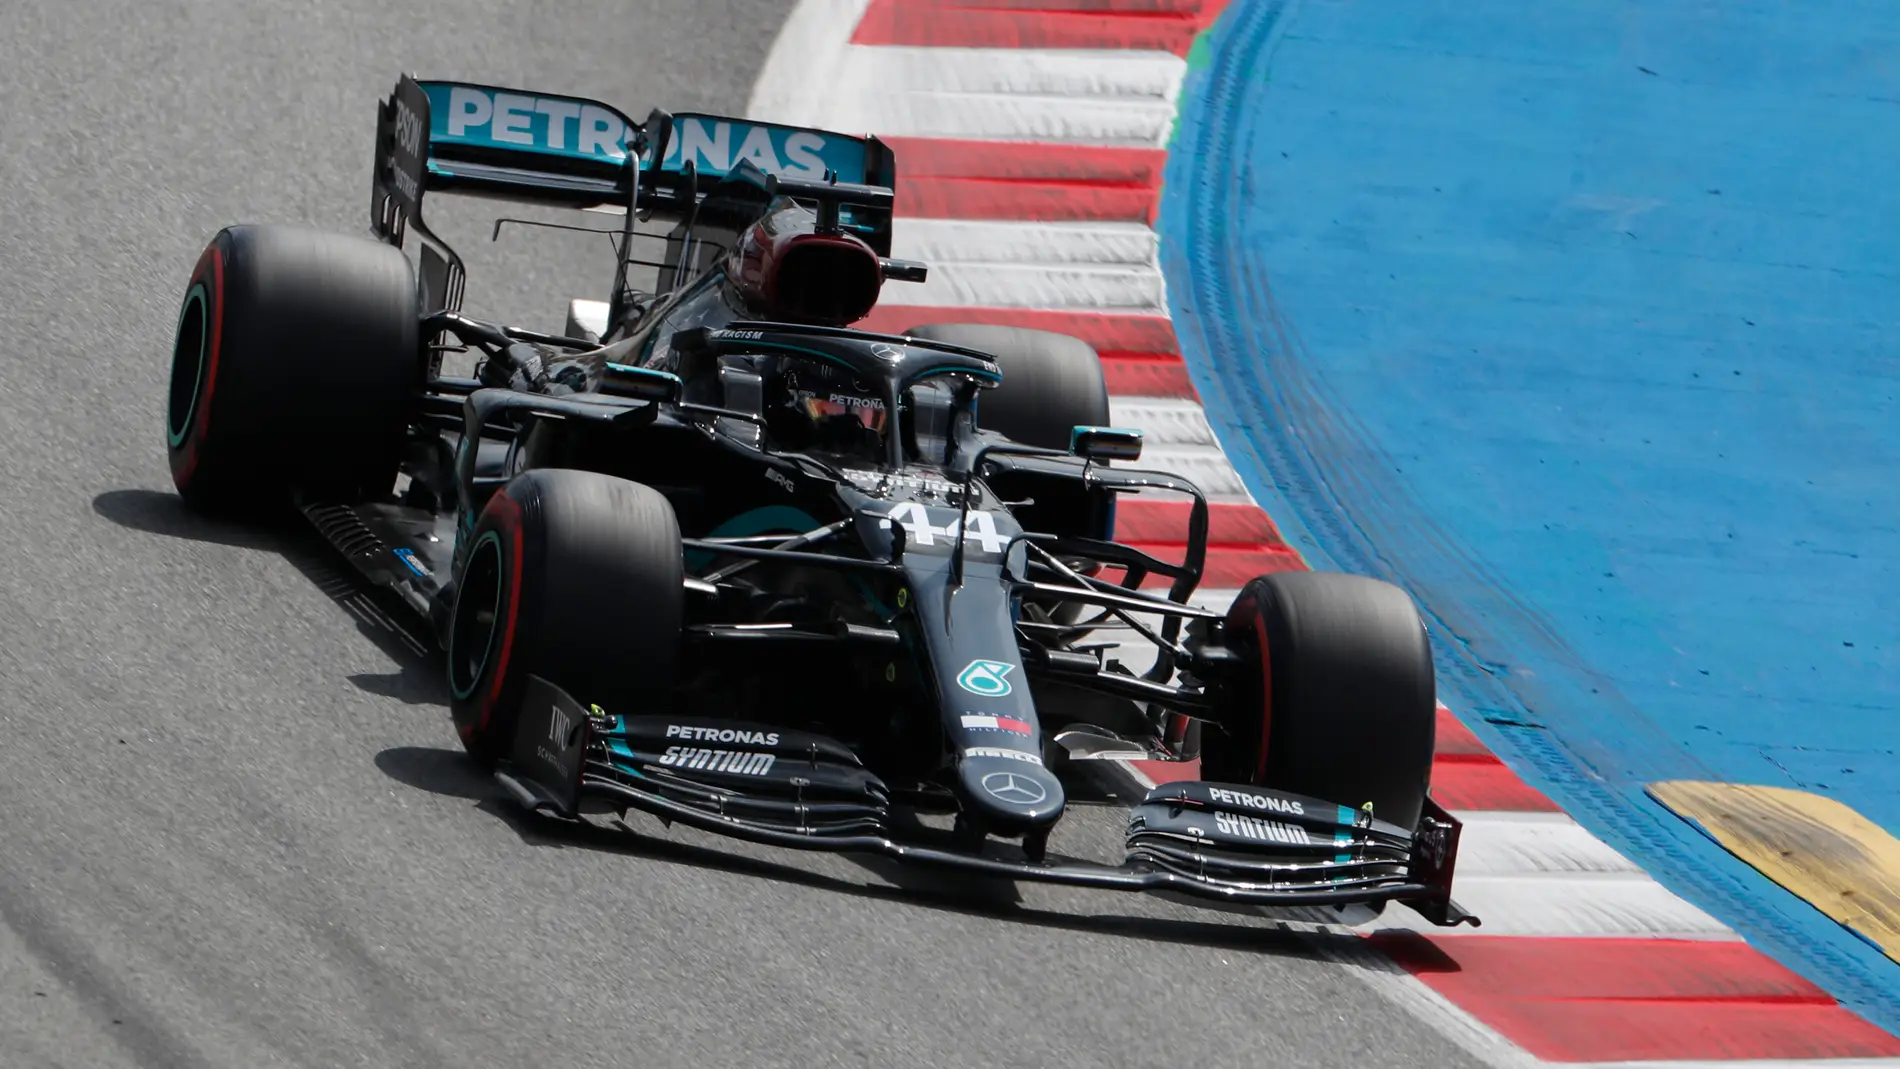  Lewis Hamilton gana el GP de España 2020 